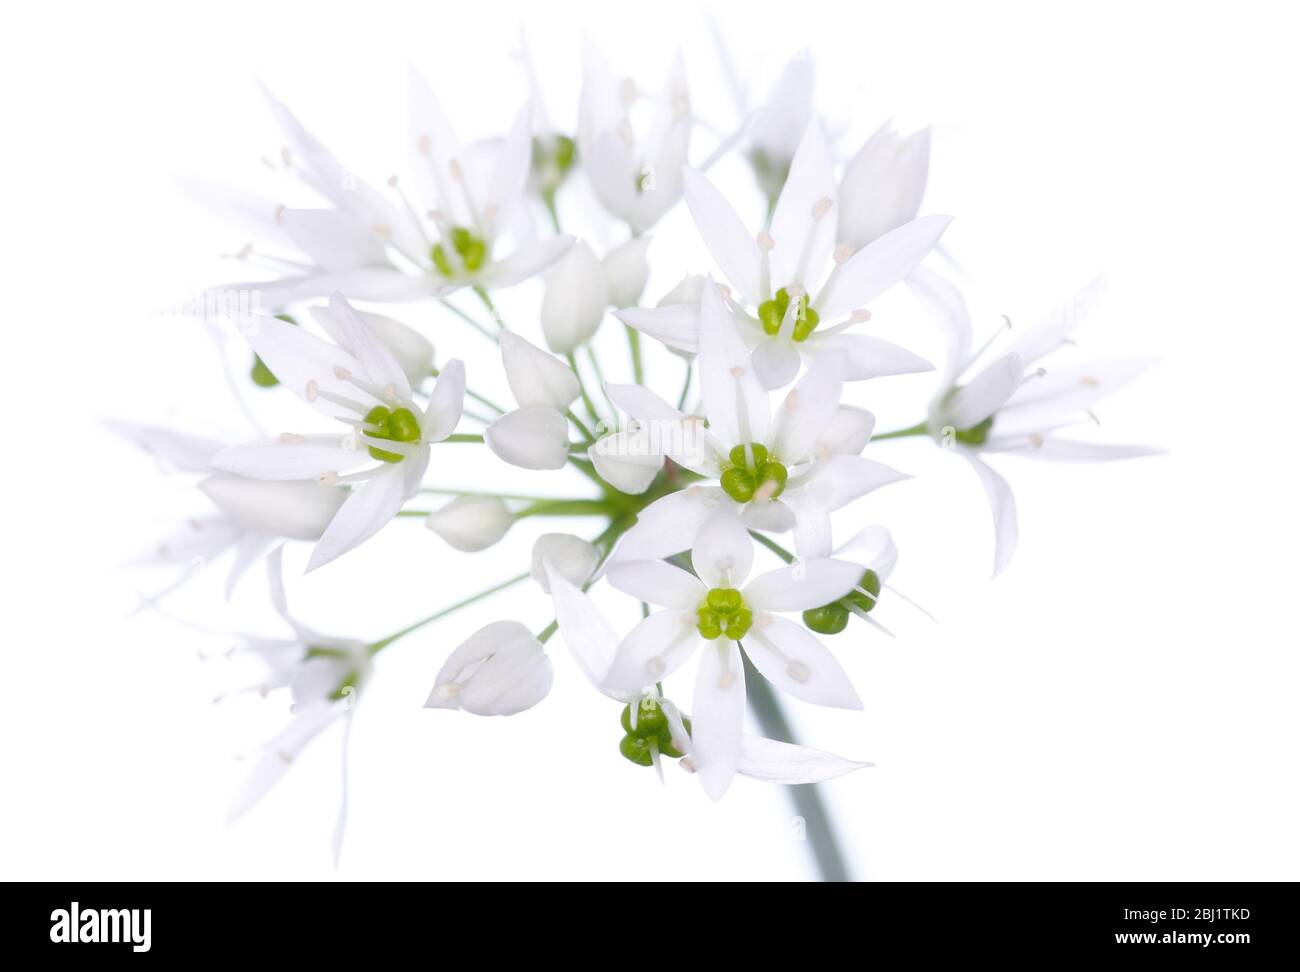 Une tête de fleur d'ail sauvage (allium ursinum), sur fond blanc, prise en studio. Banque D'Images